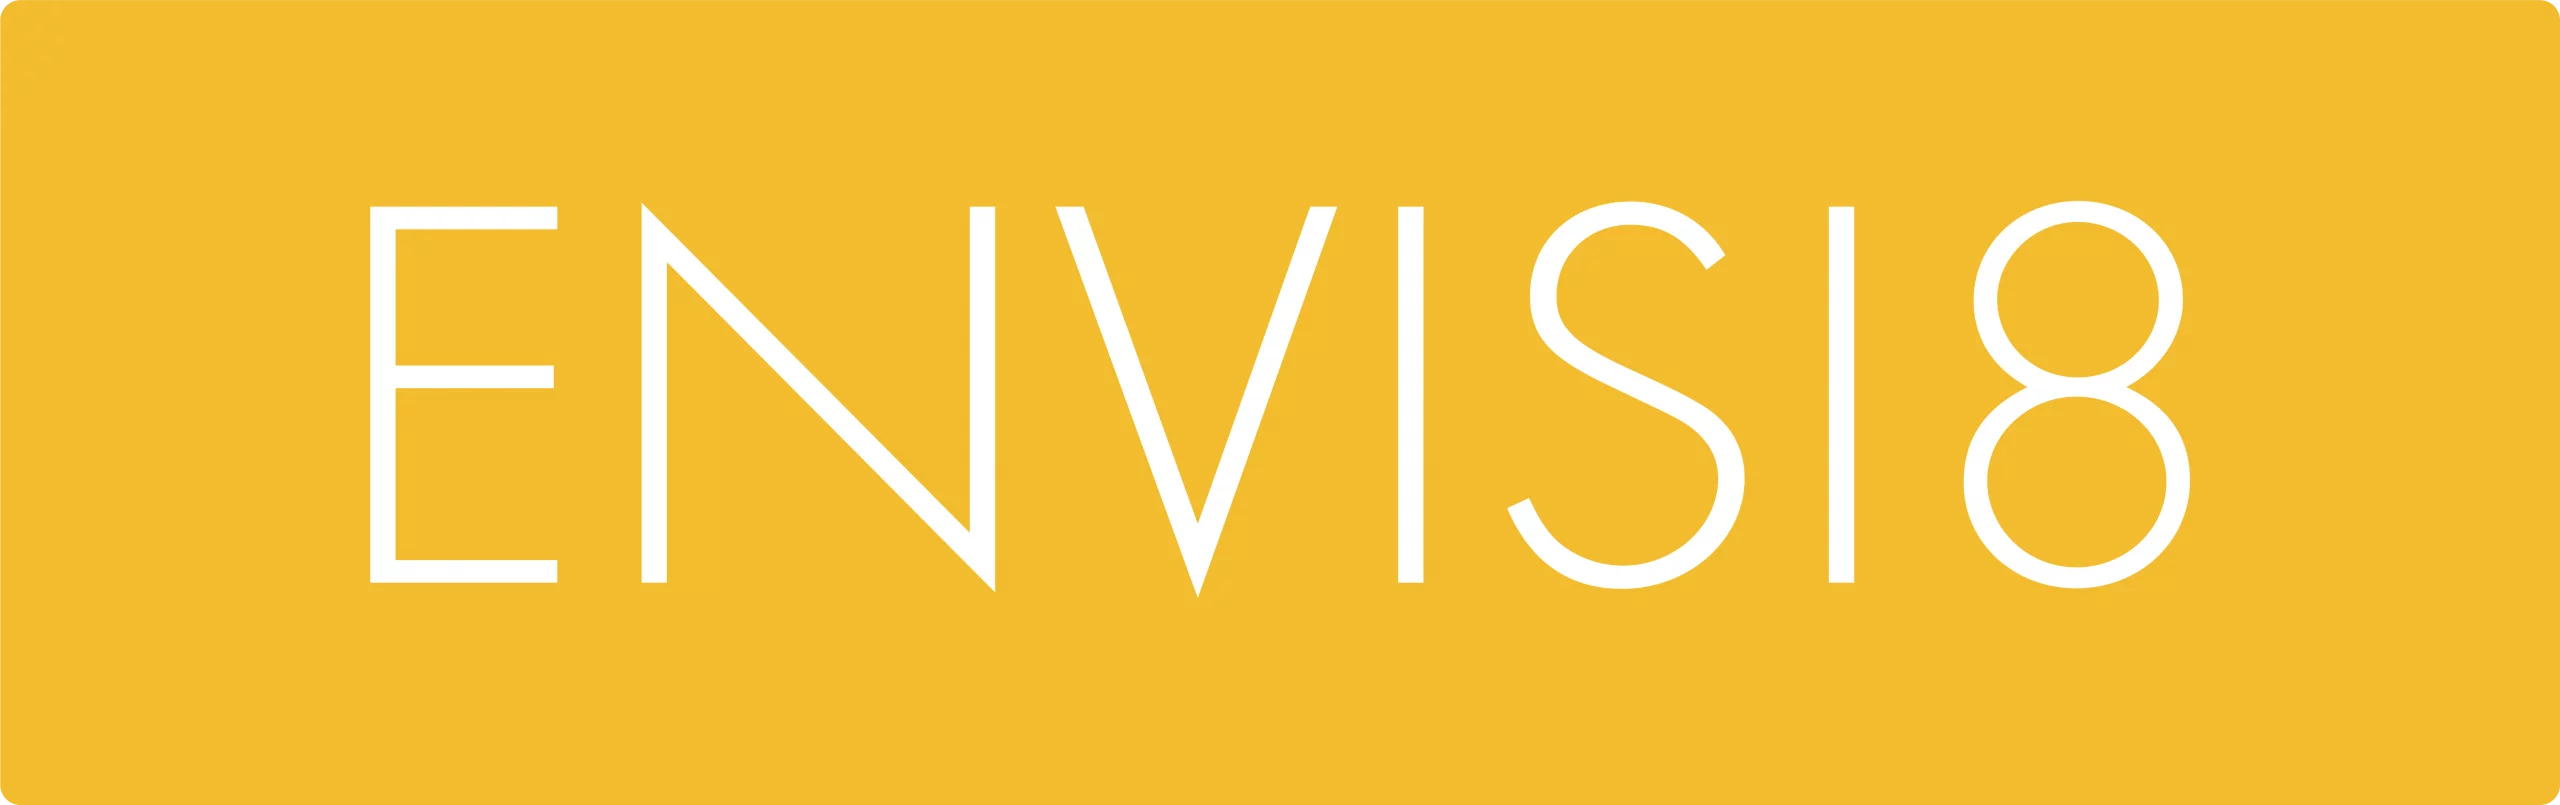 Envisi8-Creative-Official-Logo-Main